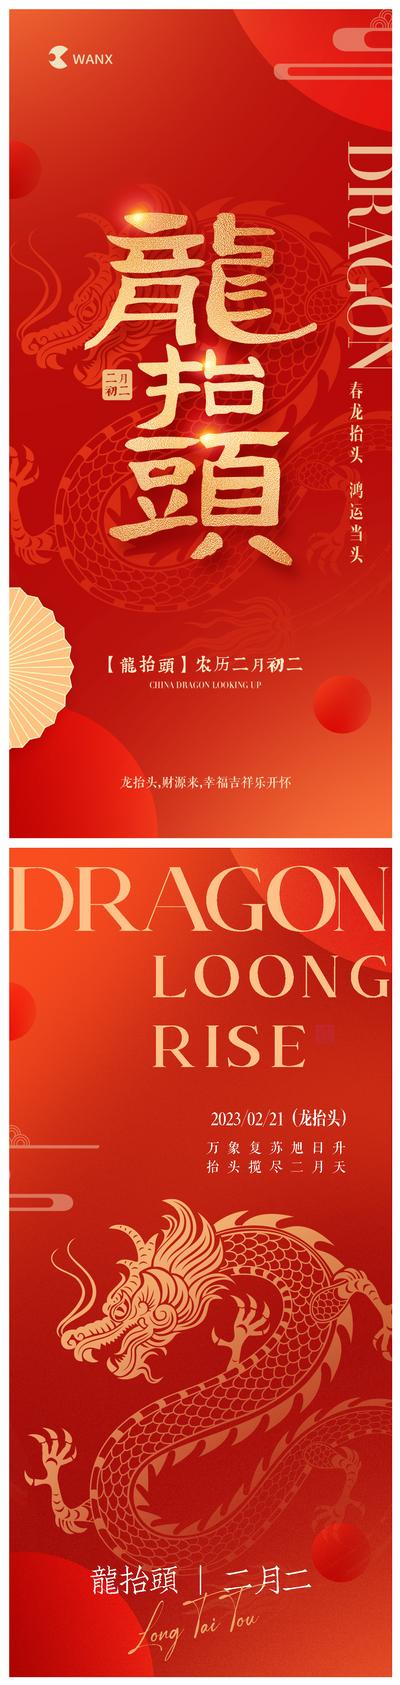 【南门网】广告 海报 地产 龙抬头 红金 中国传统节日 二月初二 节日 龙年